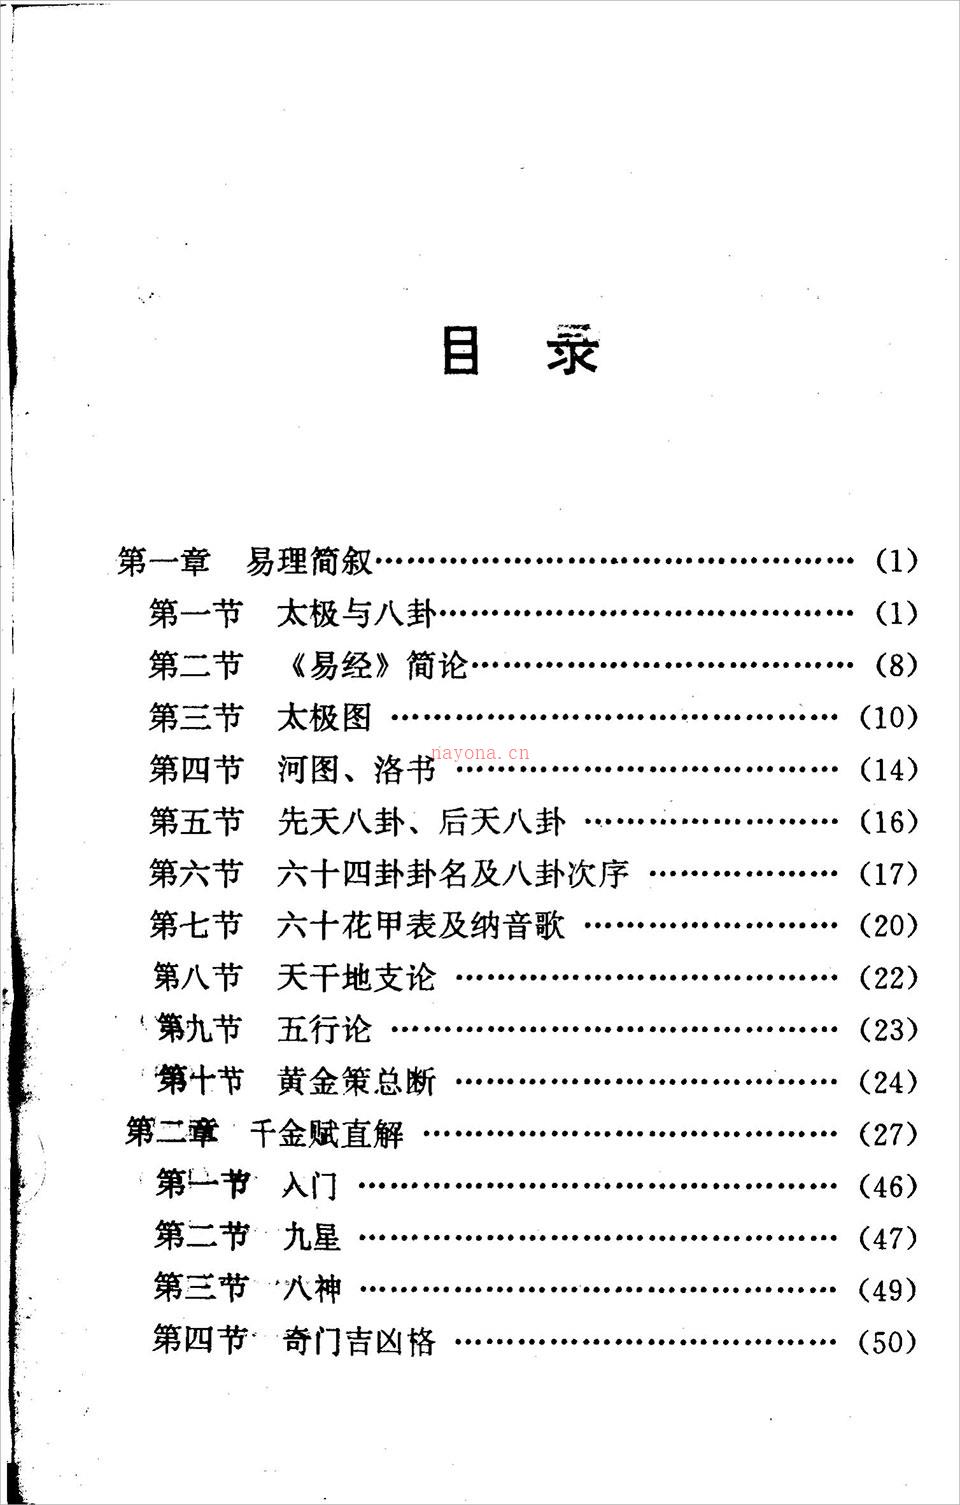 邵伟华-周易探秘《卜易预测学》358页.pdf 百度网盘资源